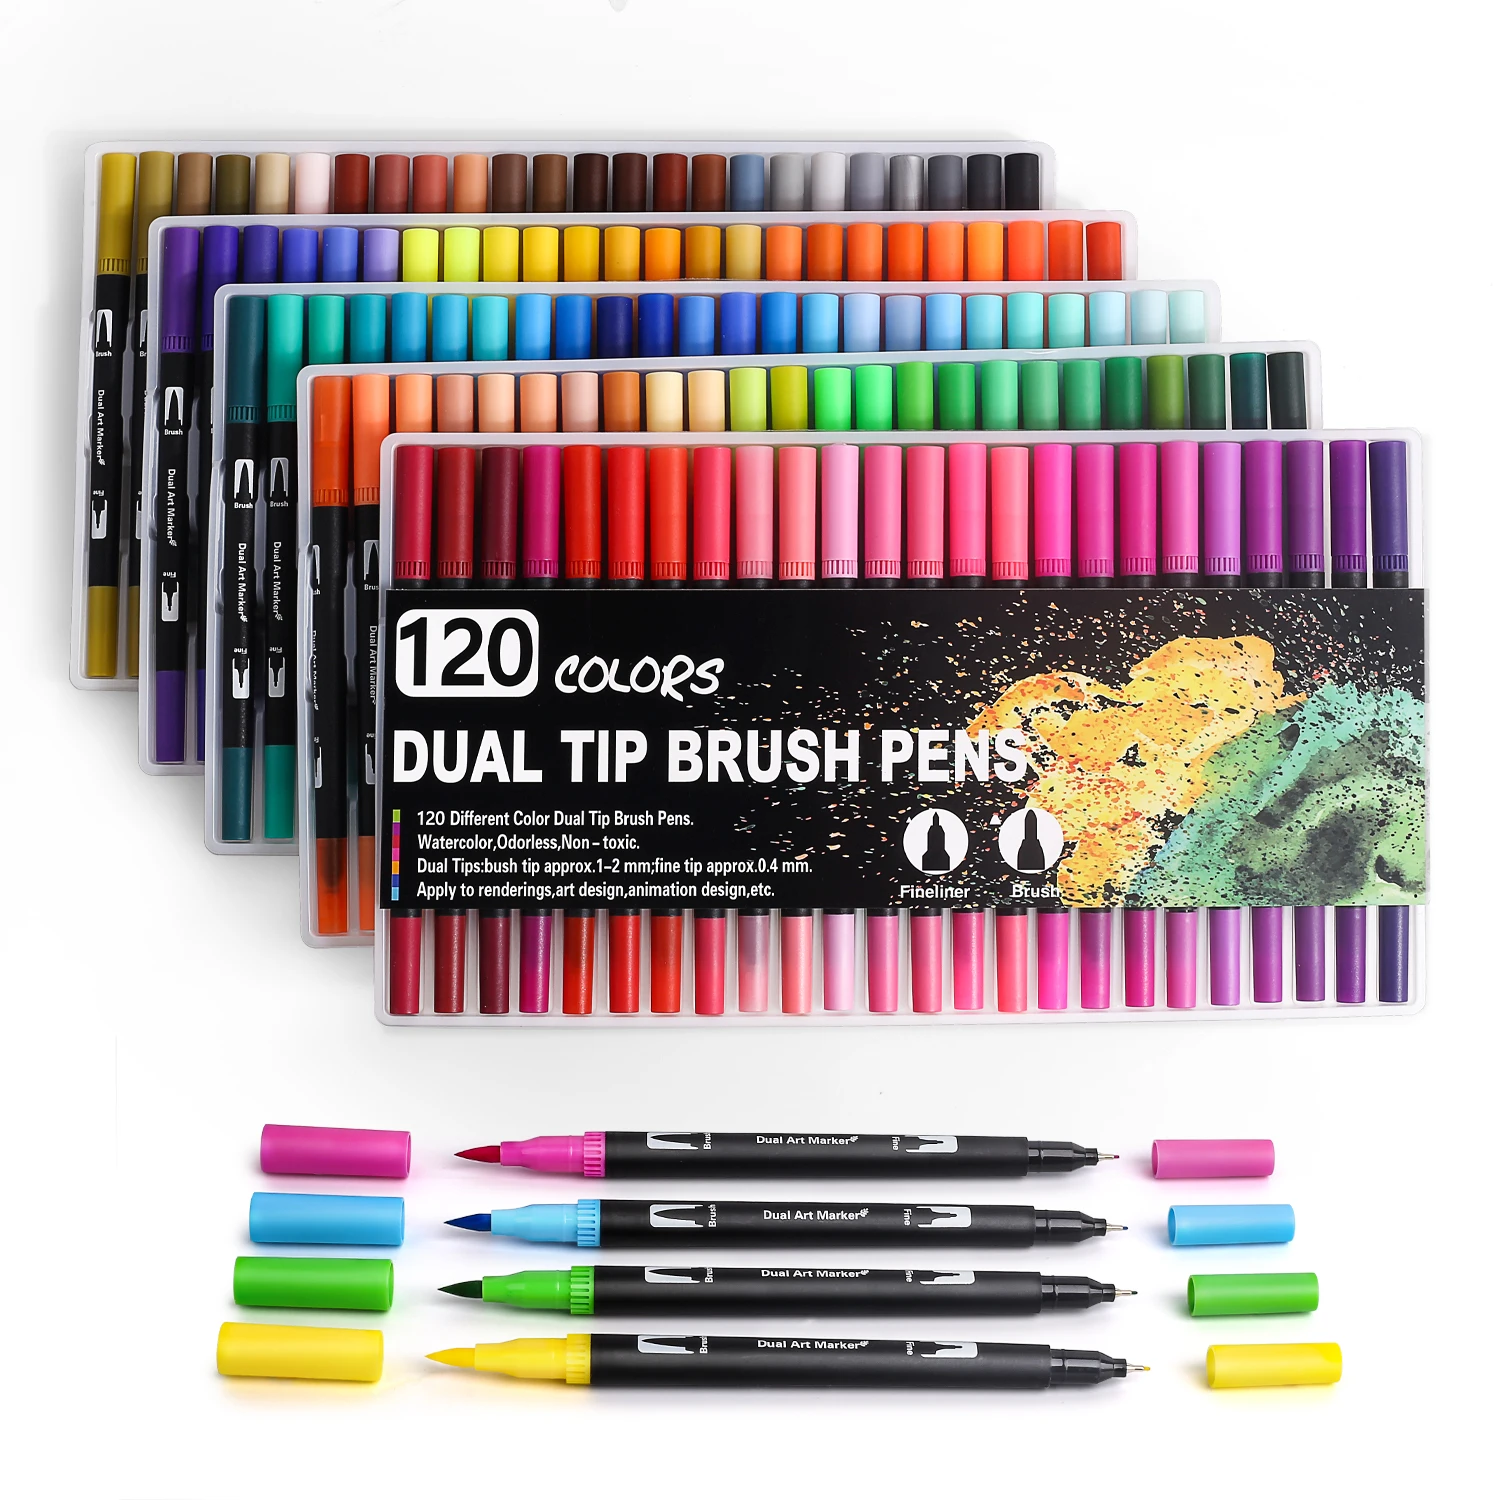 120 colors dual tip brush pens